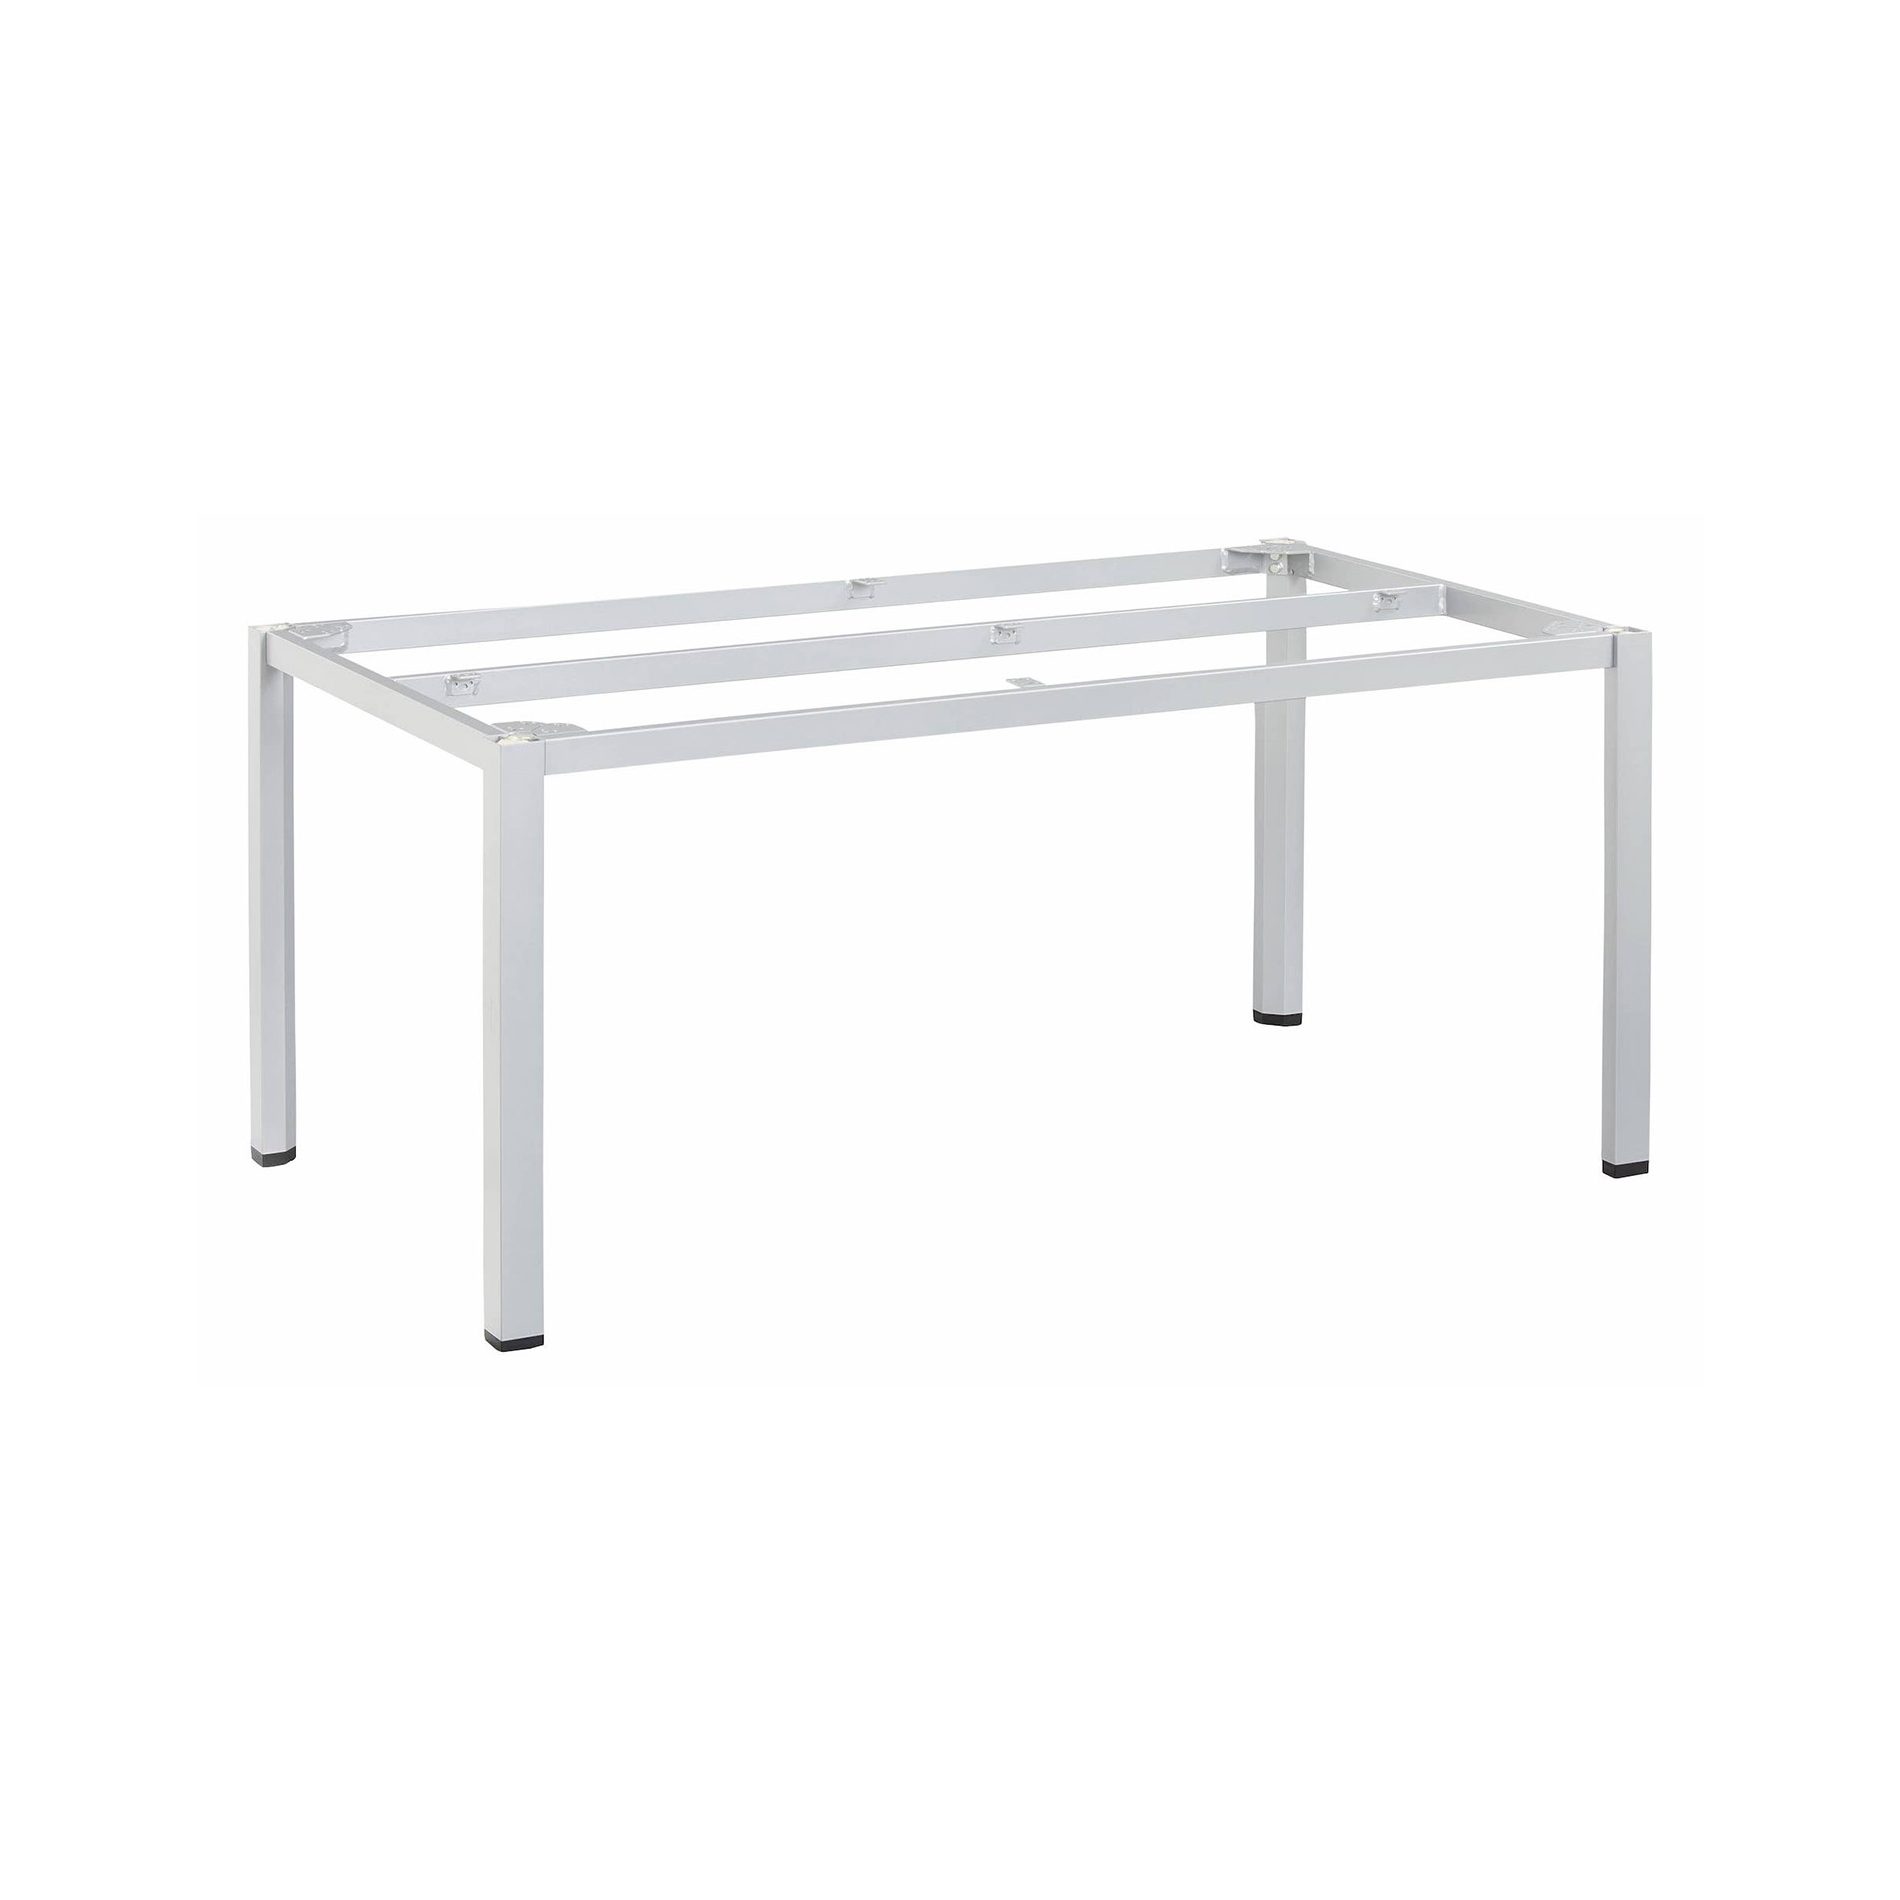 Kettler "Cubic" Tischgestell 160x95 cm, Aluminium silber